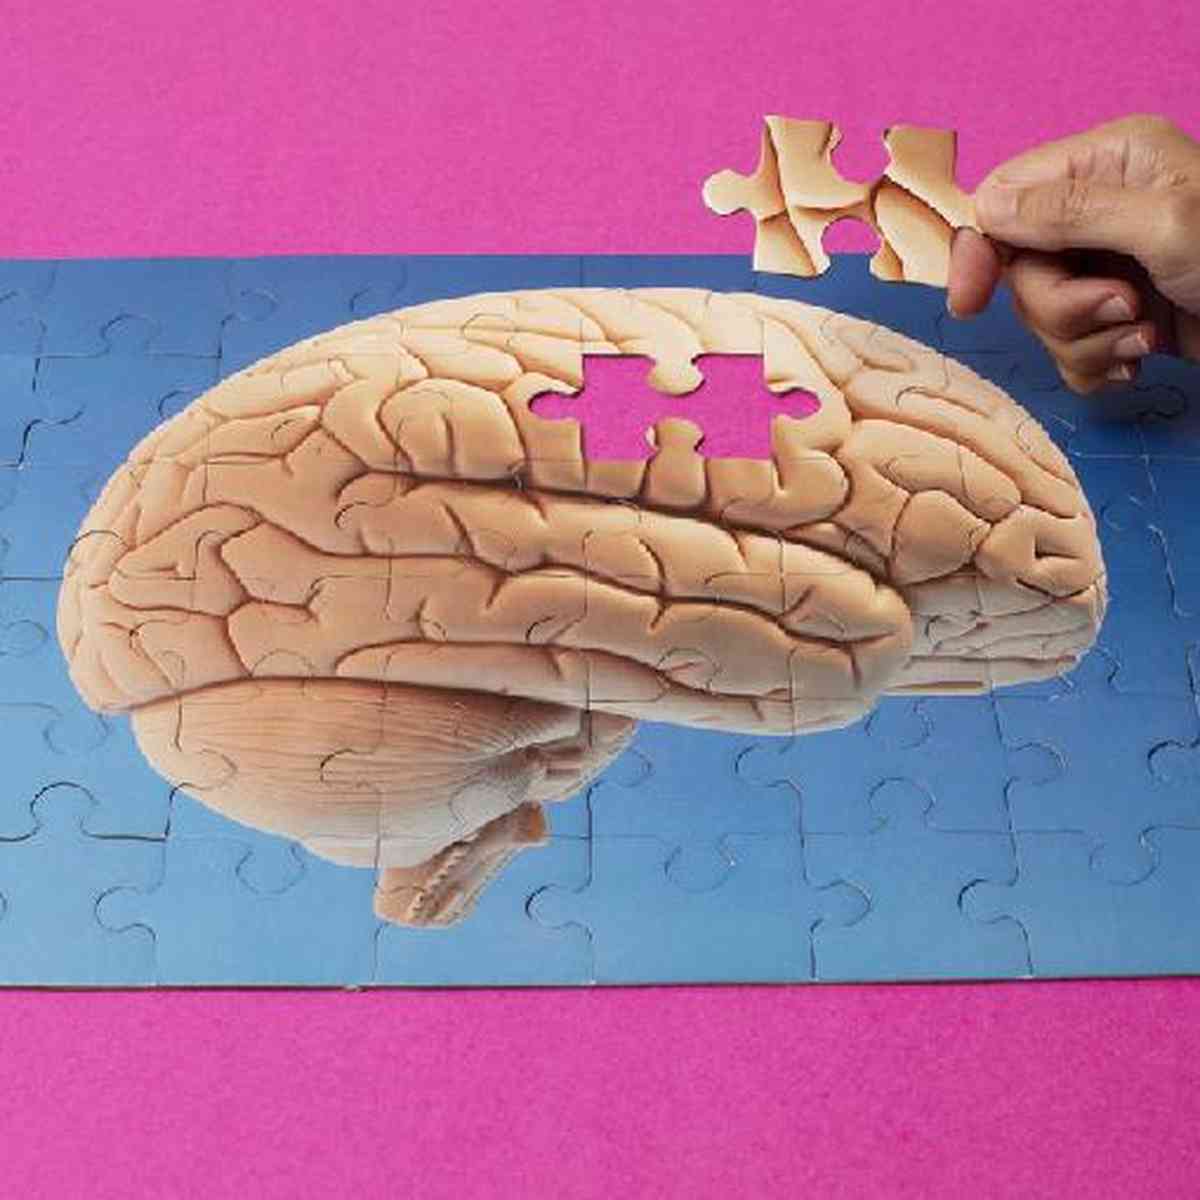 Jogos e quebra-cabeças podem diminuir risco de demência, indica